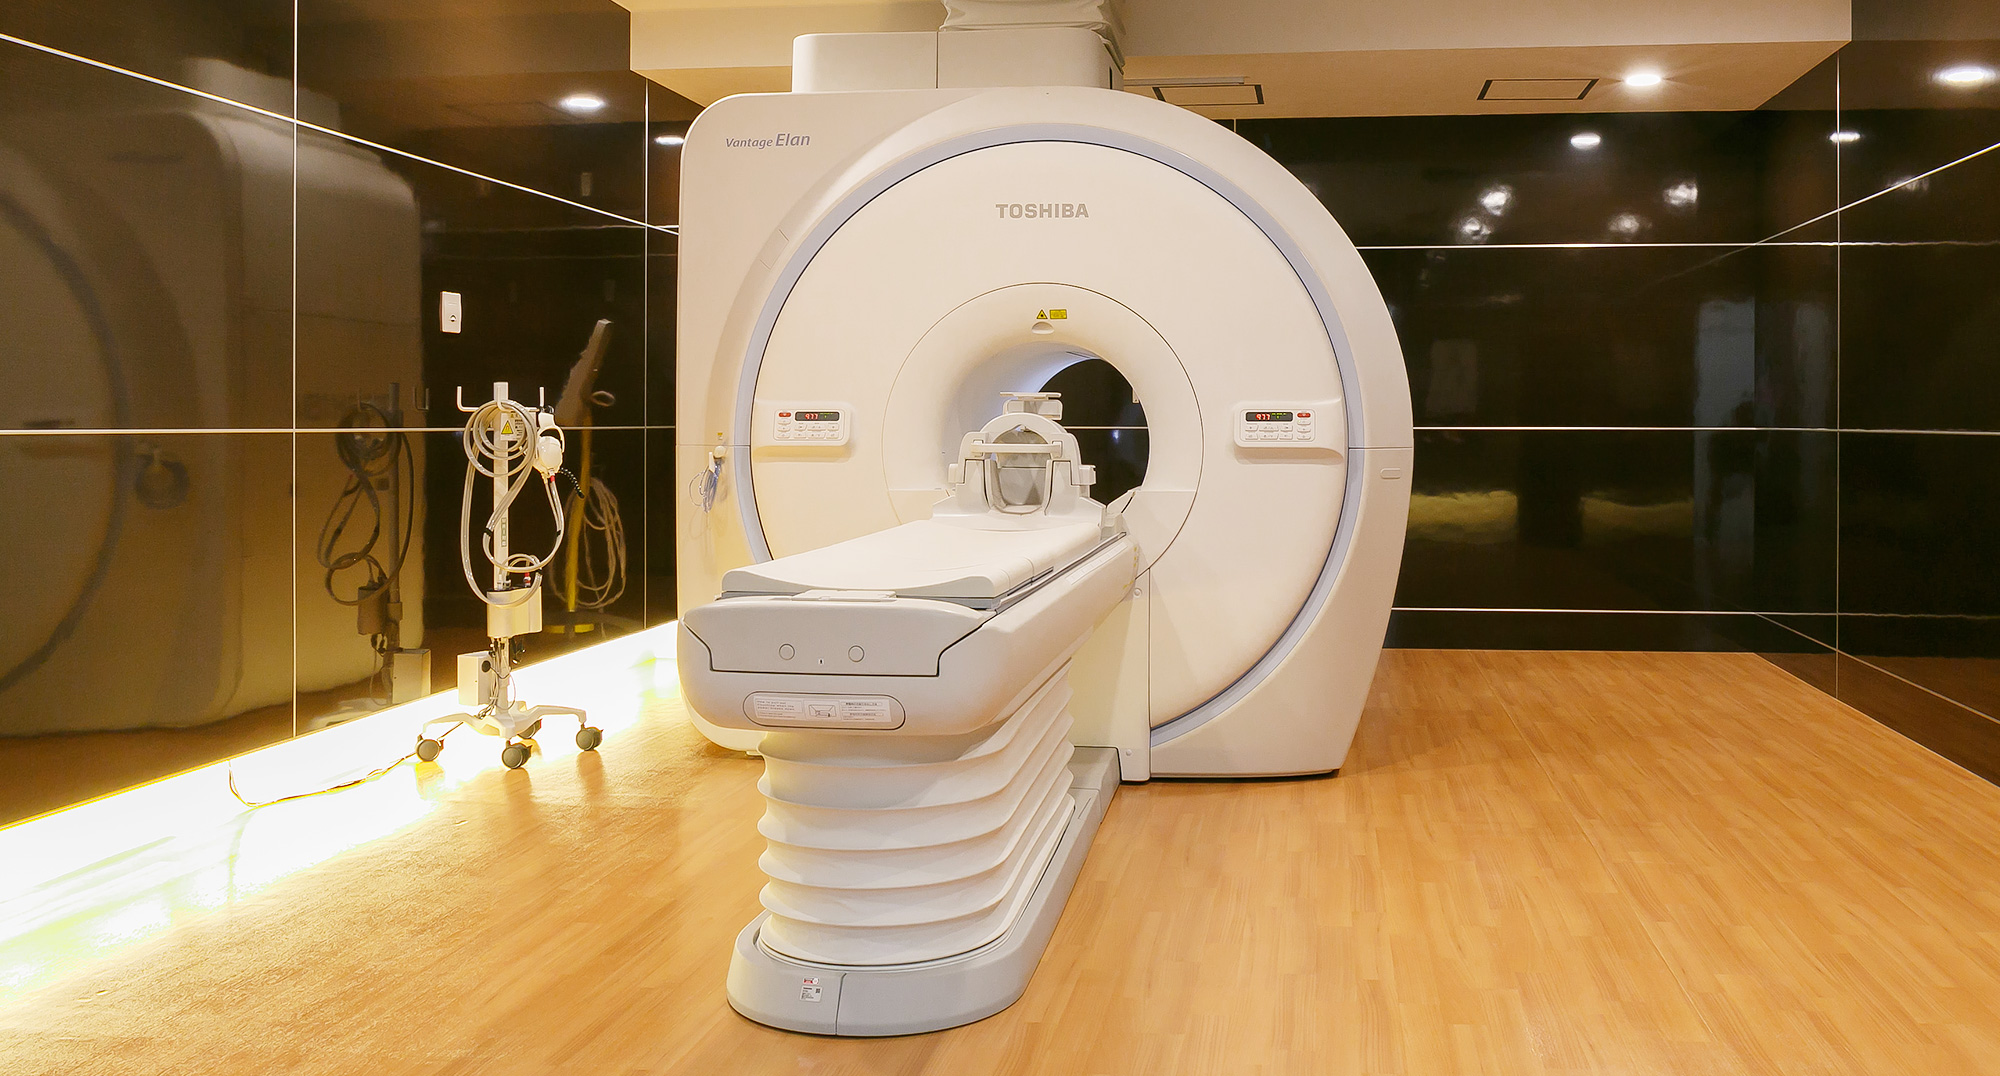 キヤノンメディカルシステムズ Vantage Elan 1.5T MRI